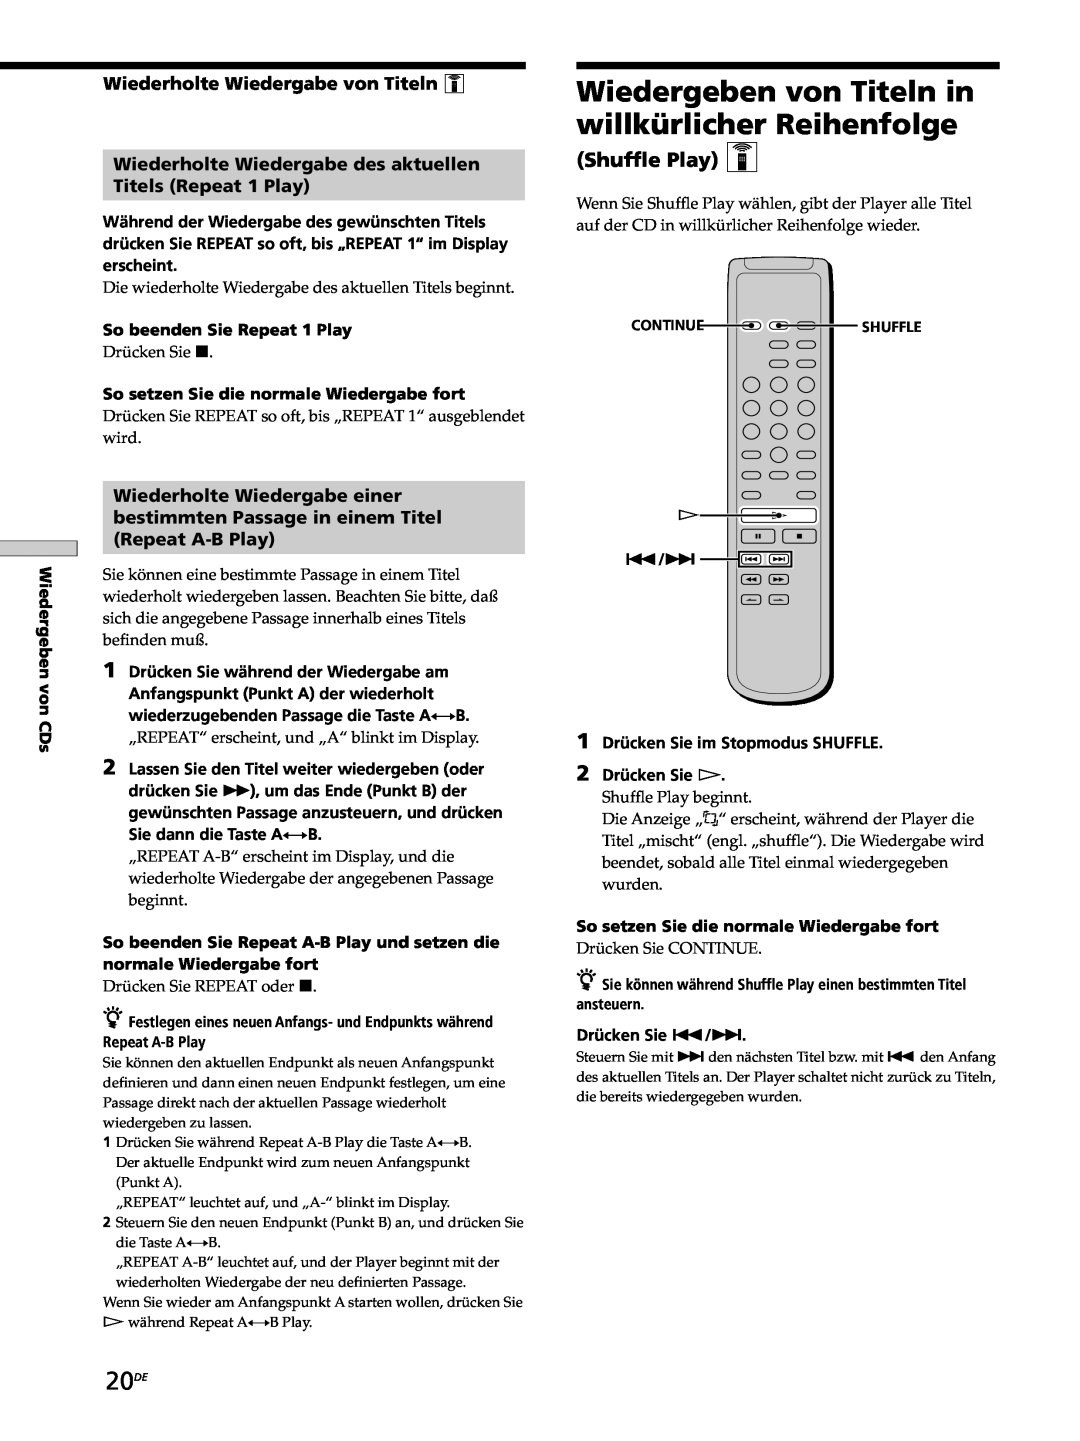 Sony SCD-XB770 20DE, Shuffle Play Z, Wiederholte Wiedergabe von Titeln Z, Wiederholte Wiedergabe des aktuellen 